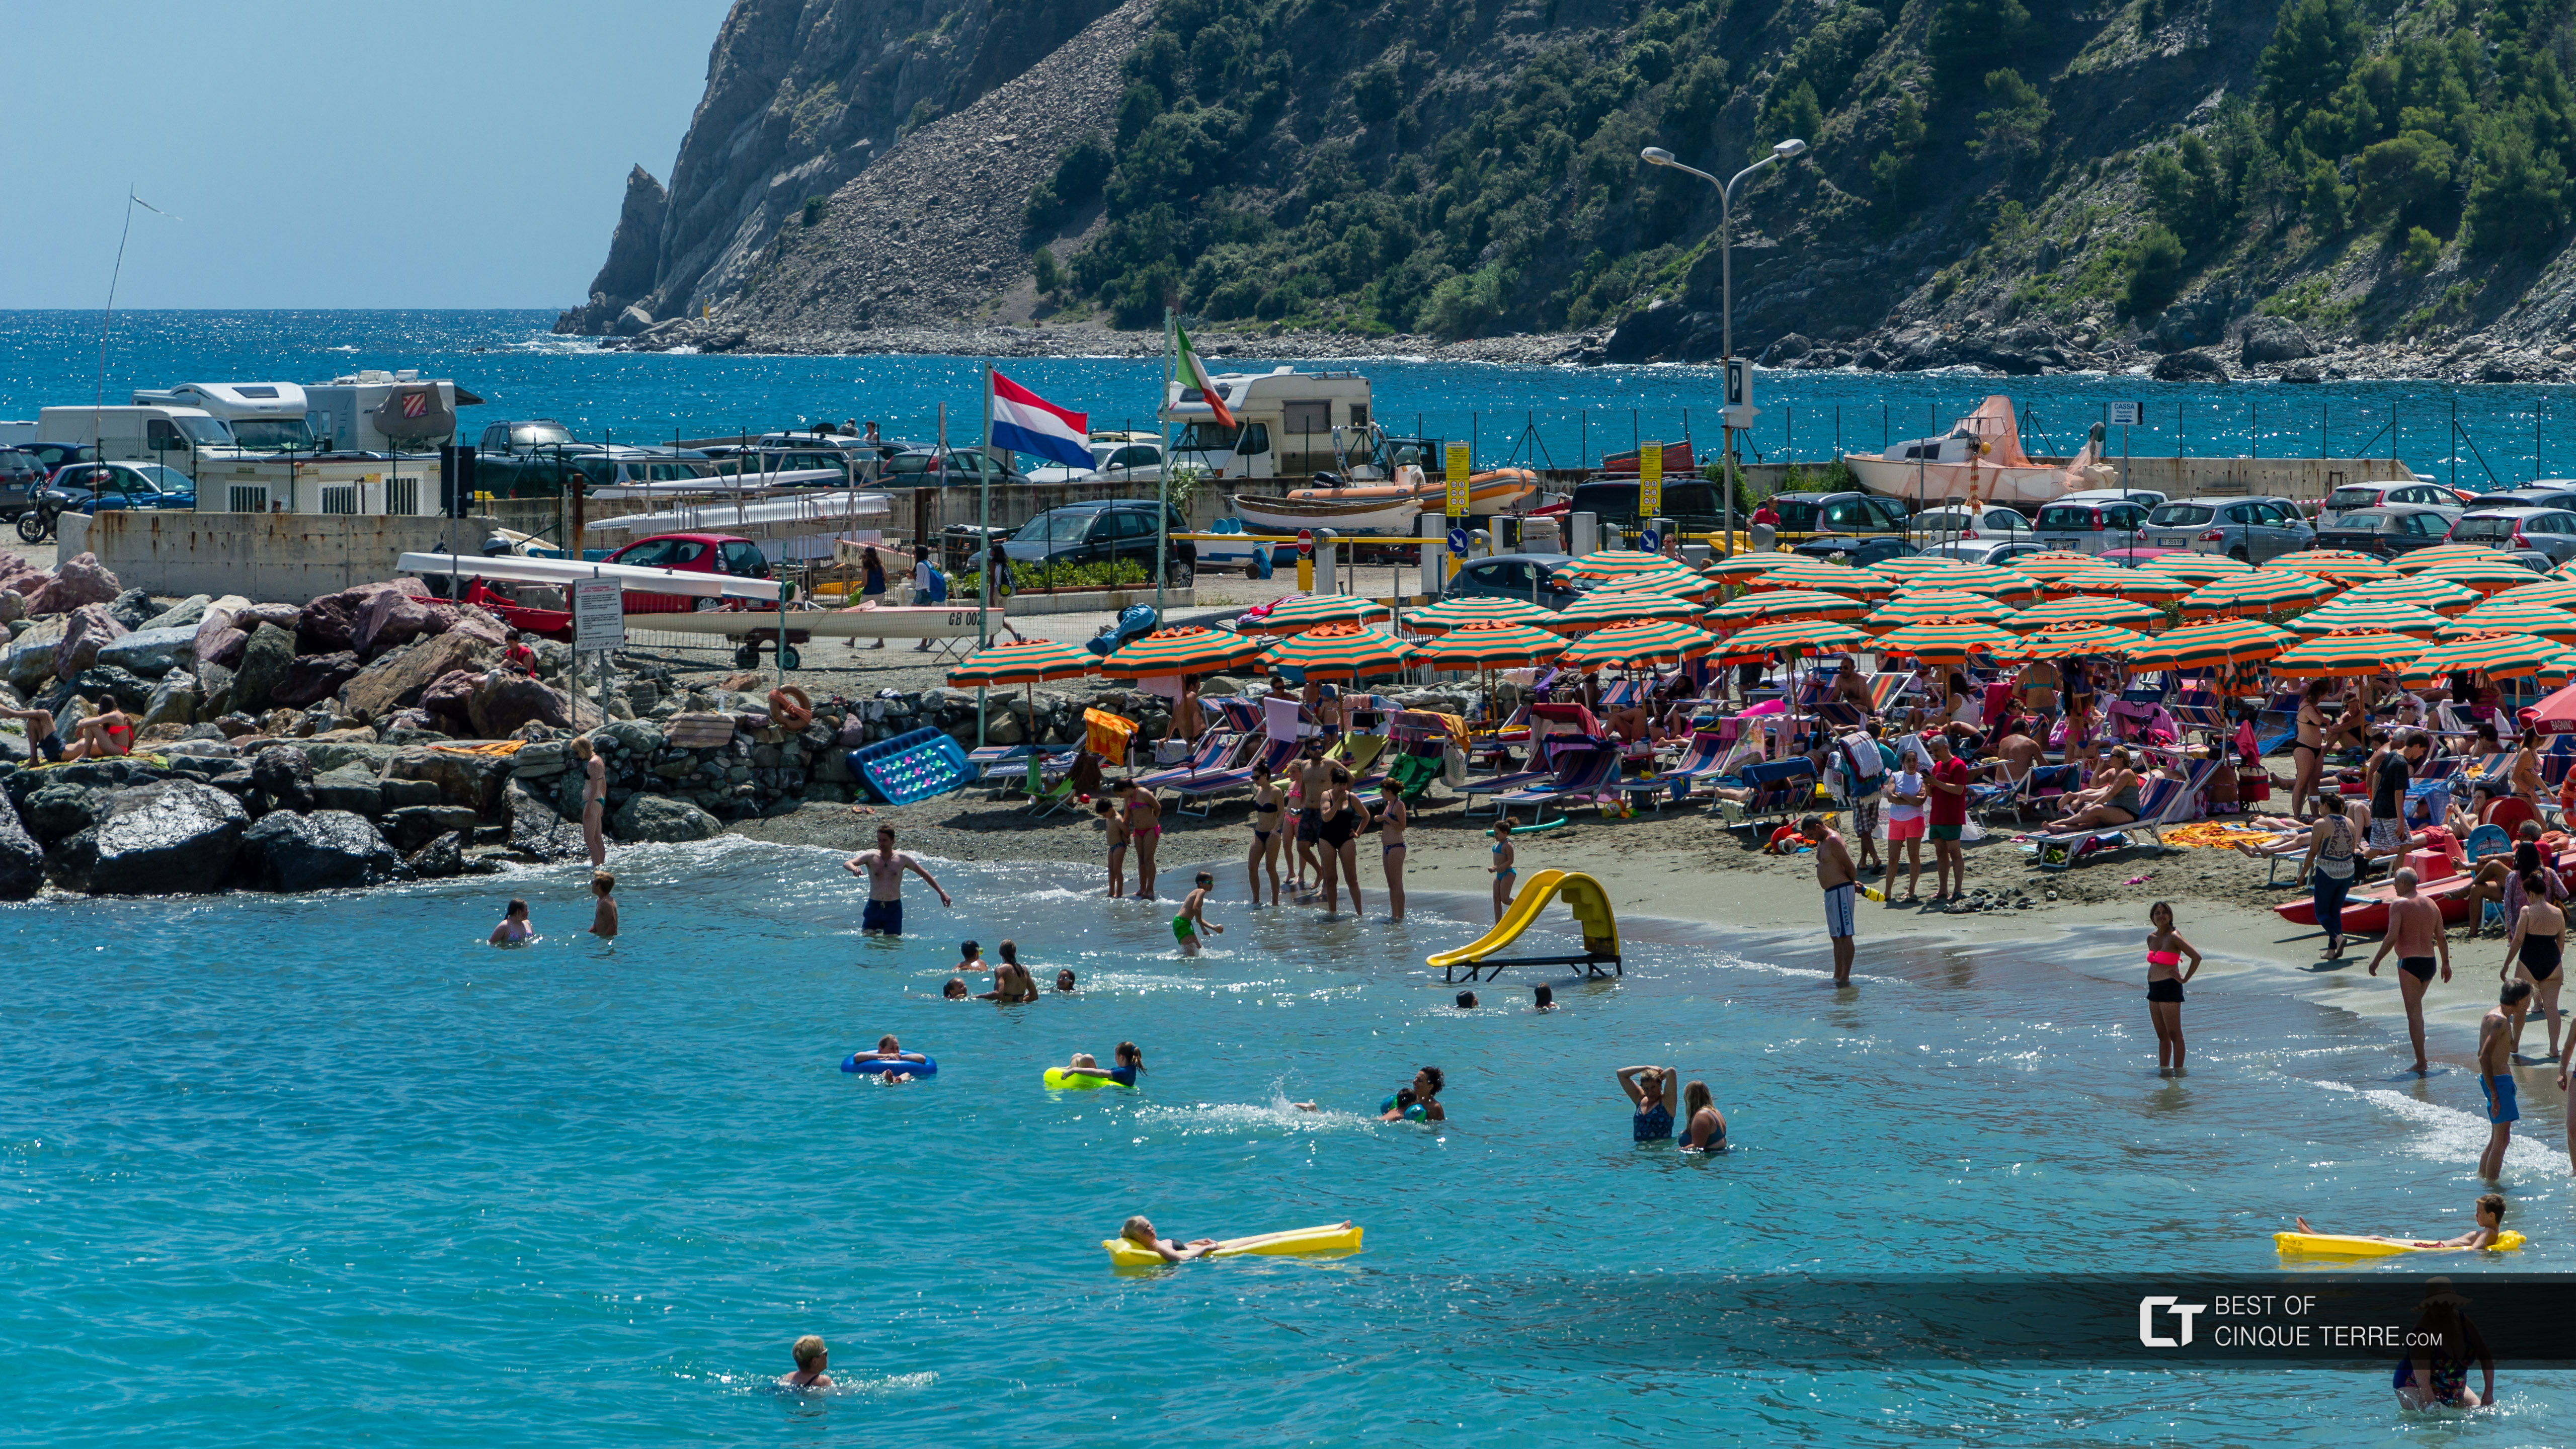 Una playa pública para familias con niños, Cinque Terre, Italia